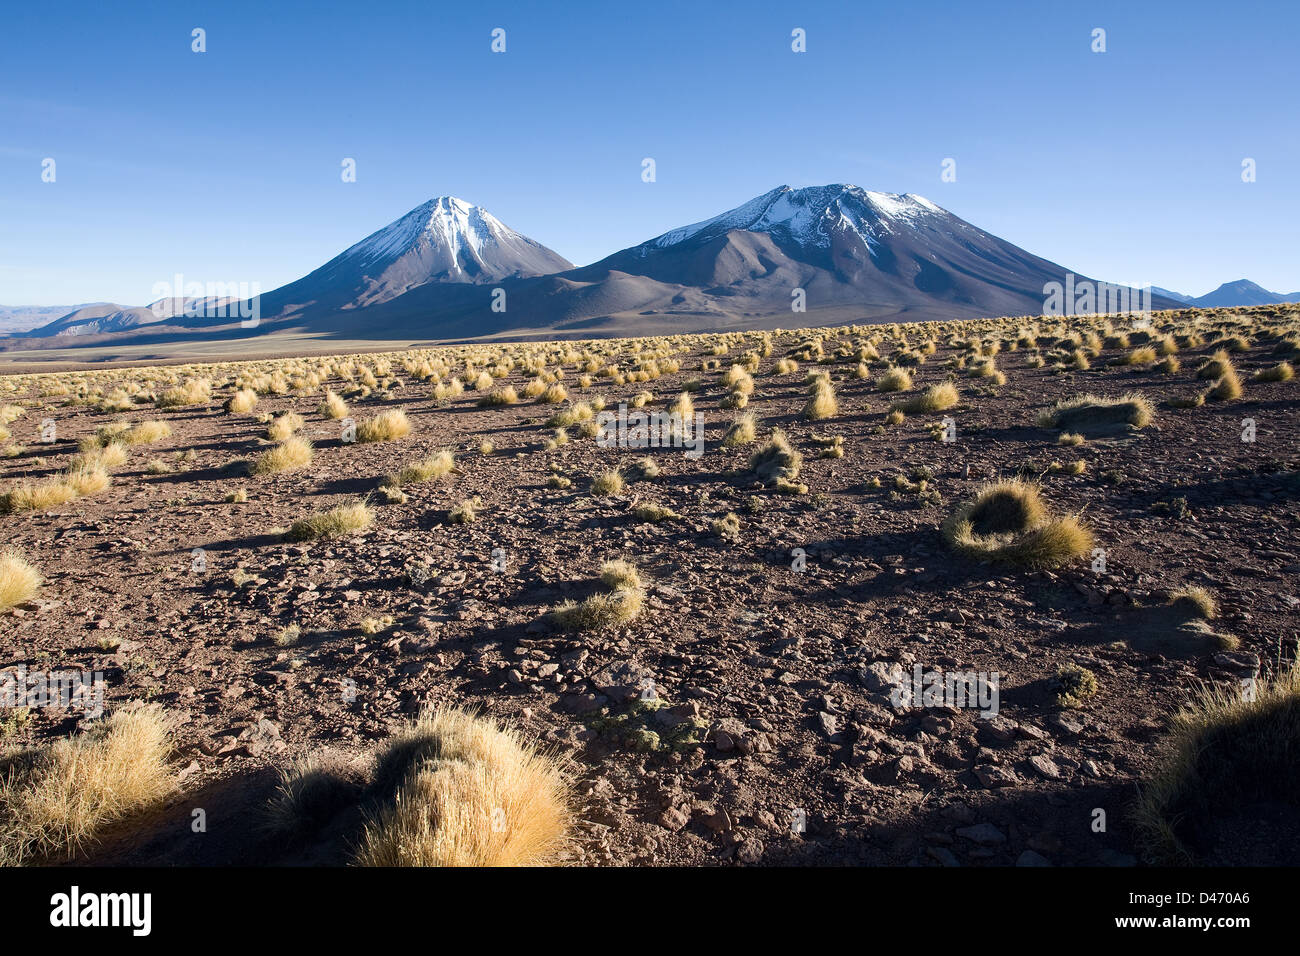 Mountain pass Paso de Jama with volcanoes near San Pedro de Atacama, Chile Stock Photo